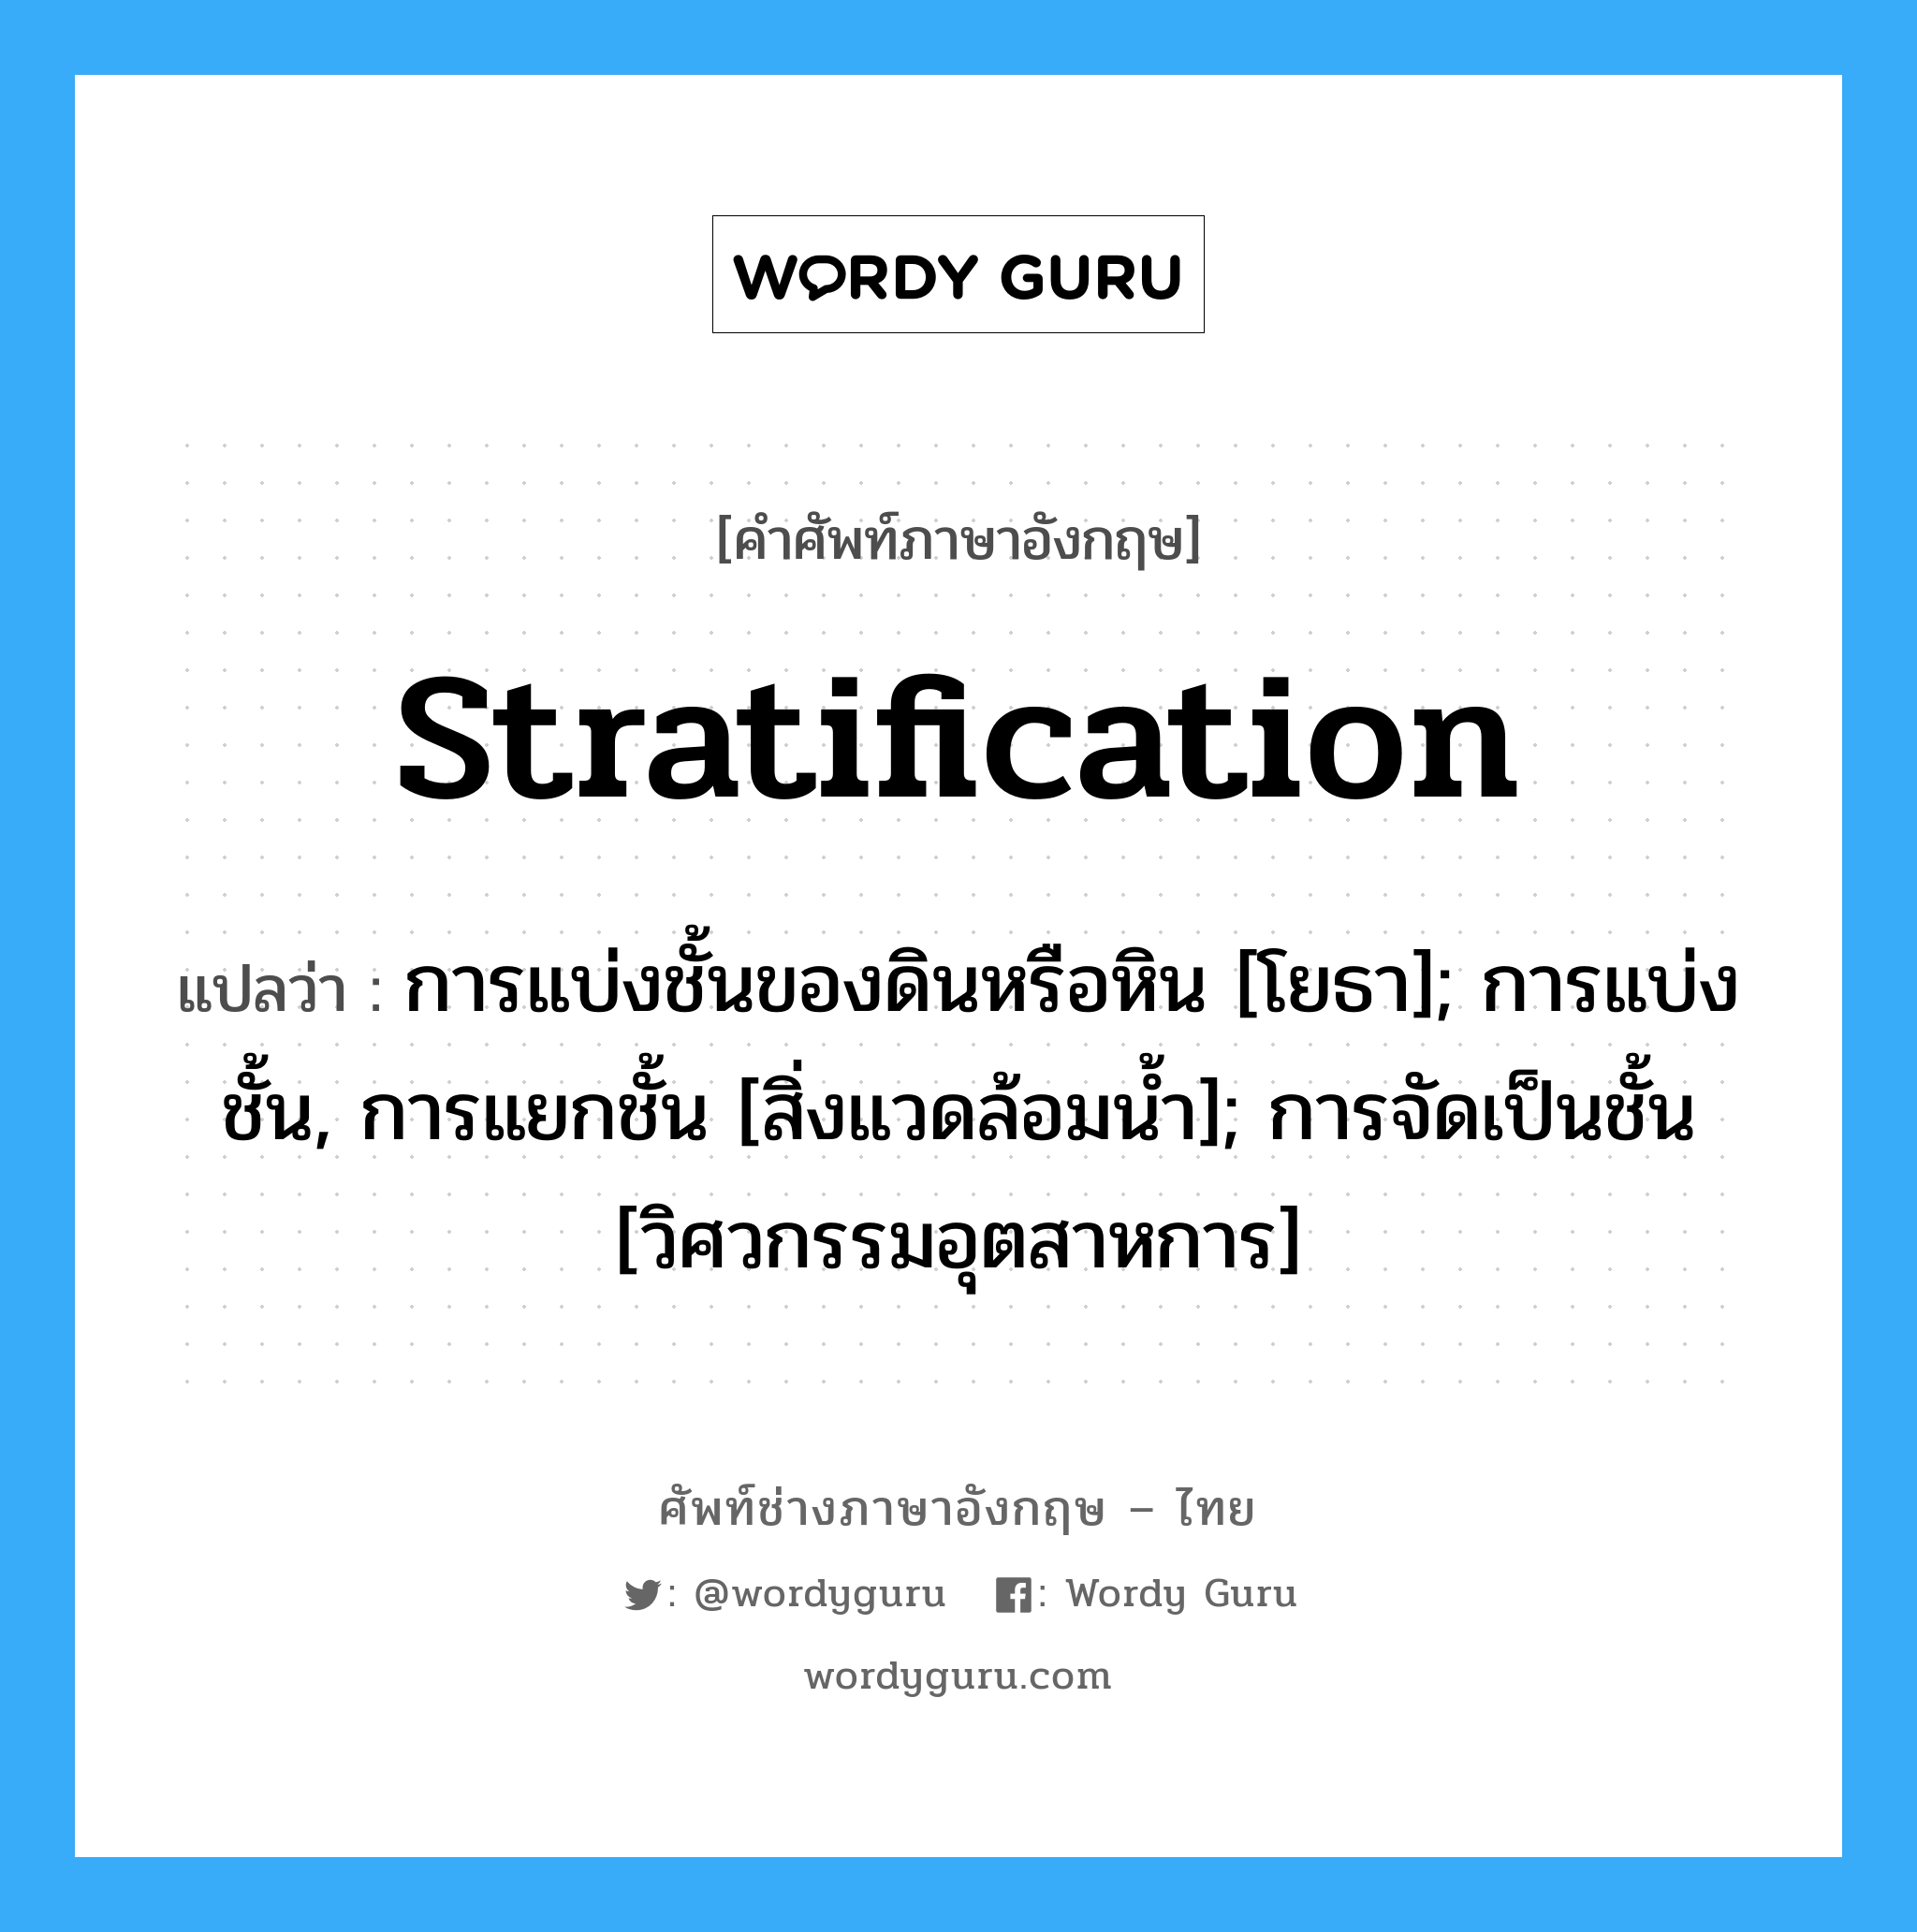 stratification แปลว่า?, คำศัพท์ช่างภาษาอังกฤษ - ไทย stratification คำศัพท์ภาษาอังกฤษ stratification แปลว่า การแบ่งชั้นของดินหรือหิน [โยธา]; การแบ่งชั้น, การแยกชั้น [สิ่งแวดล้อมน้ำ]; การจัดเป็นชั้น [วิศวกรรมอุตสาหการ]